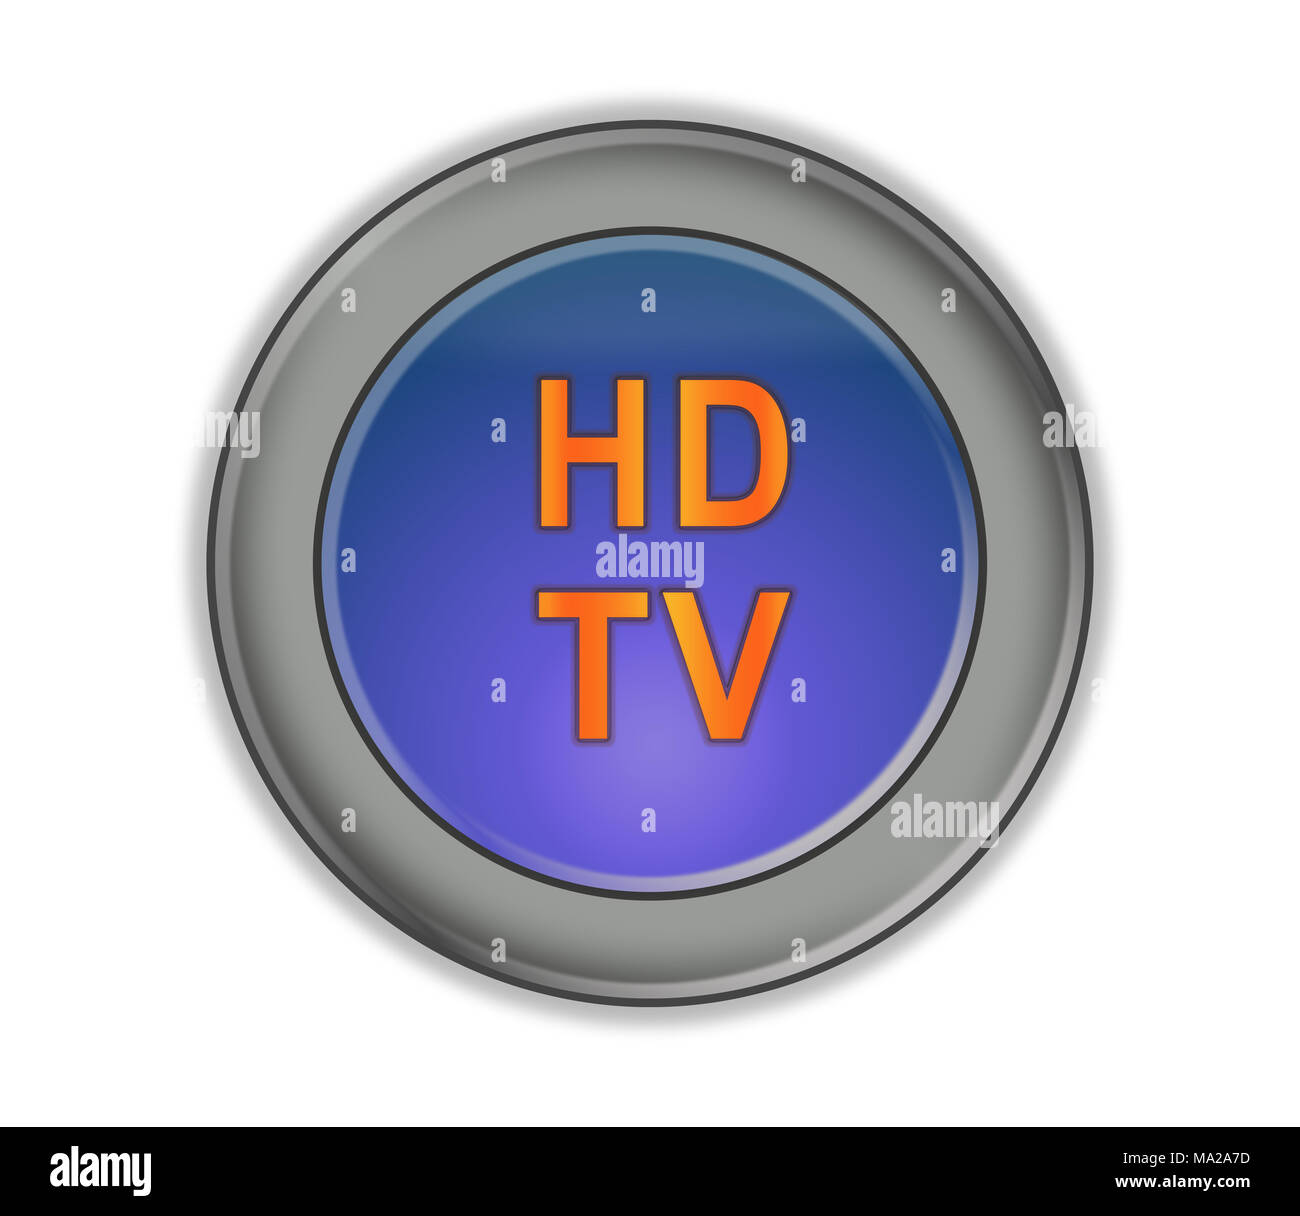 Runde drei-dimensionale Taste mit Blau und Orange Aufschrift "HD TV", weißer Hintergrund Stockfoto